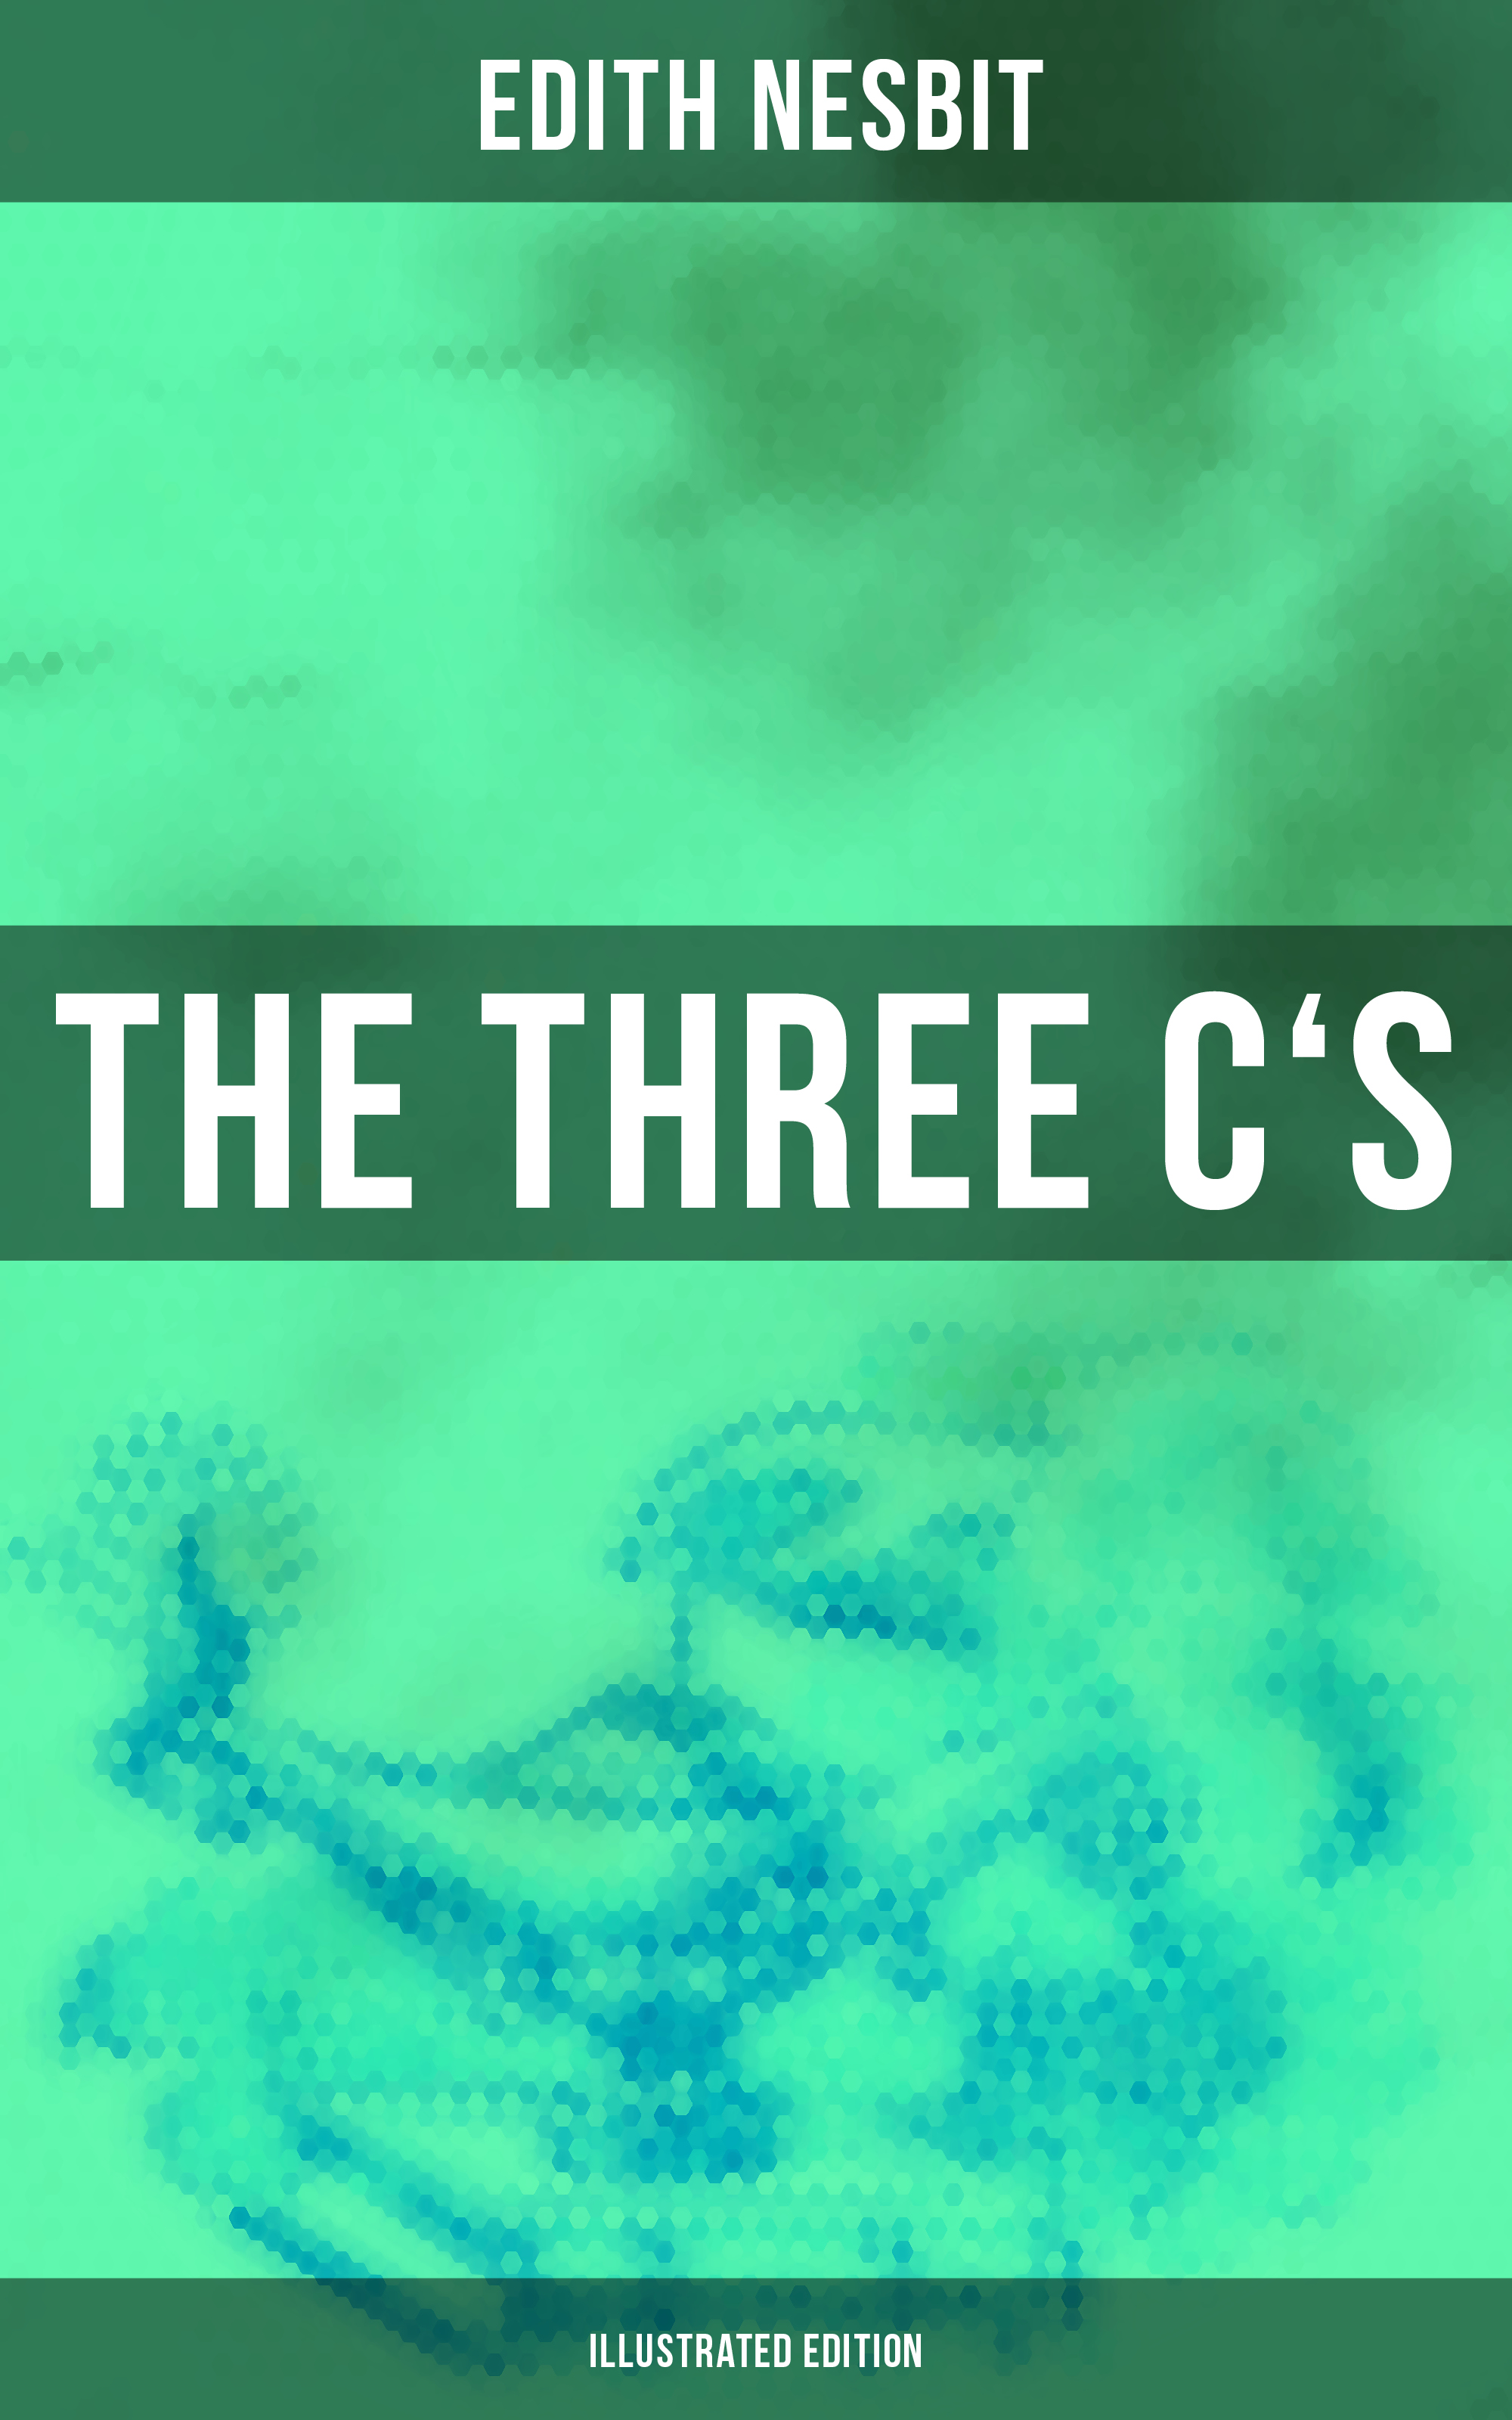 Скачать THE THREE C'S (Illustrated Edition) - Эдит Несбит